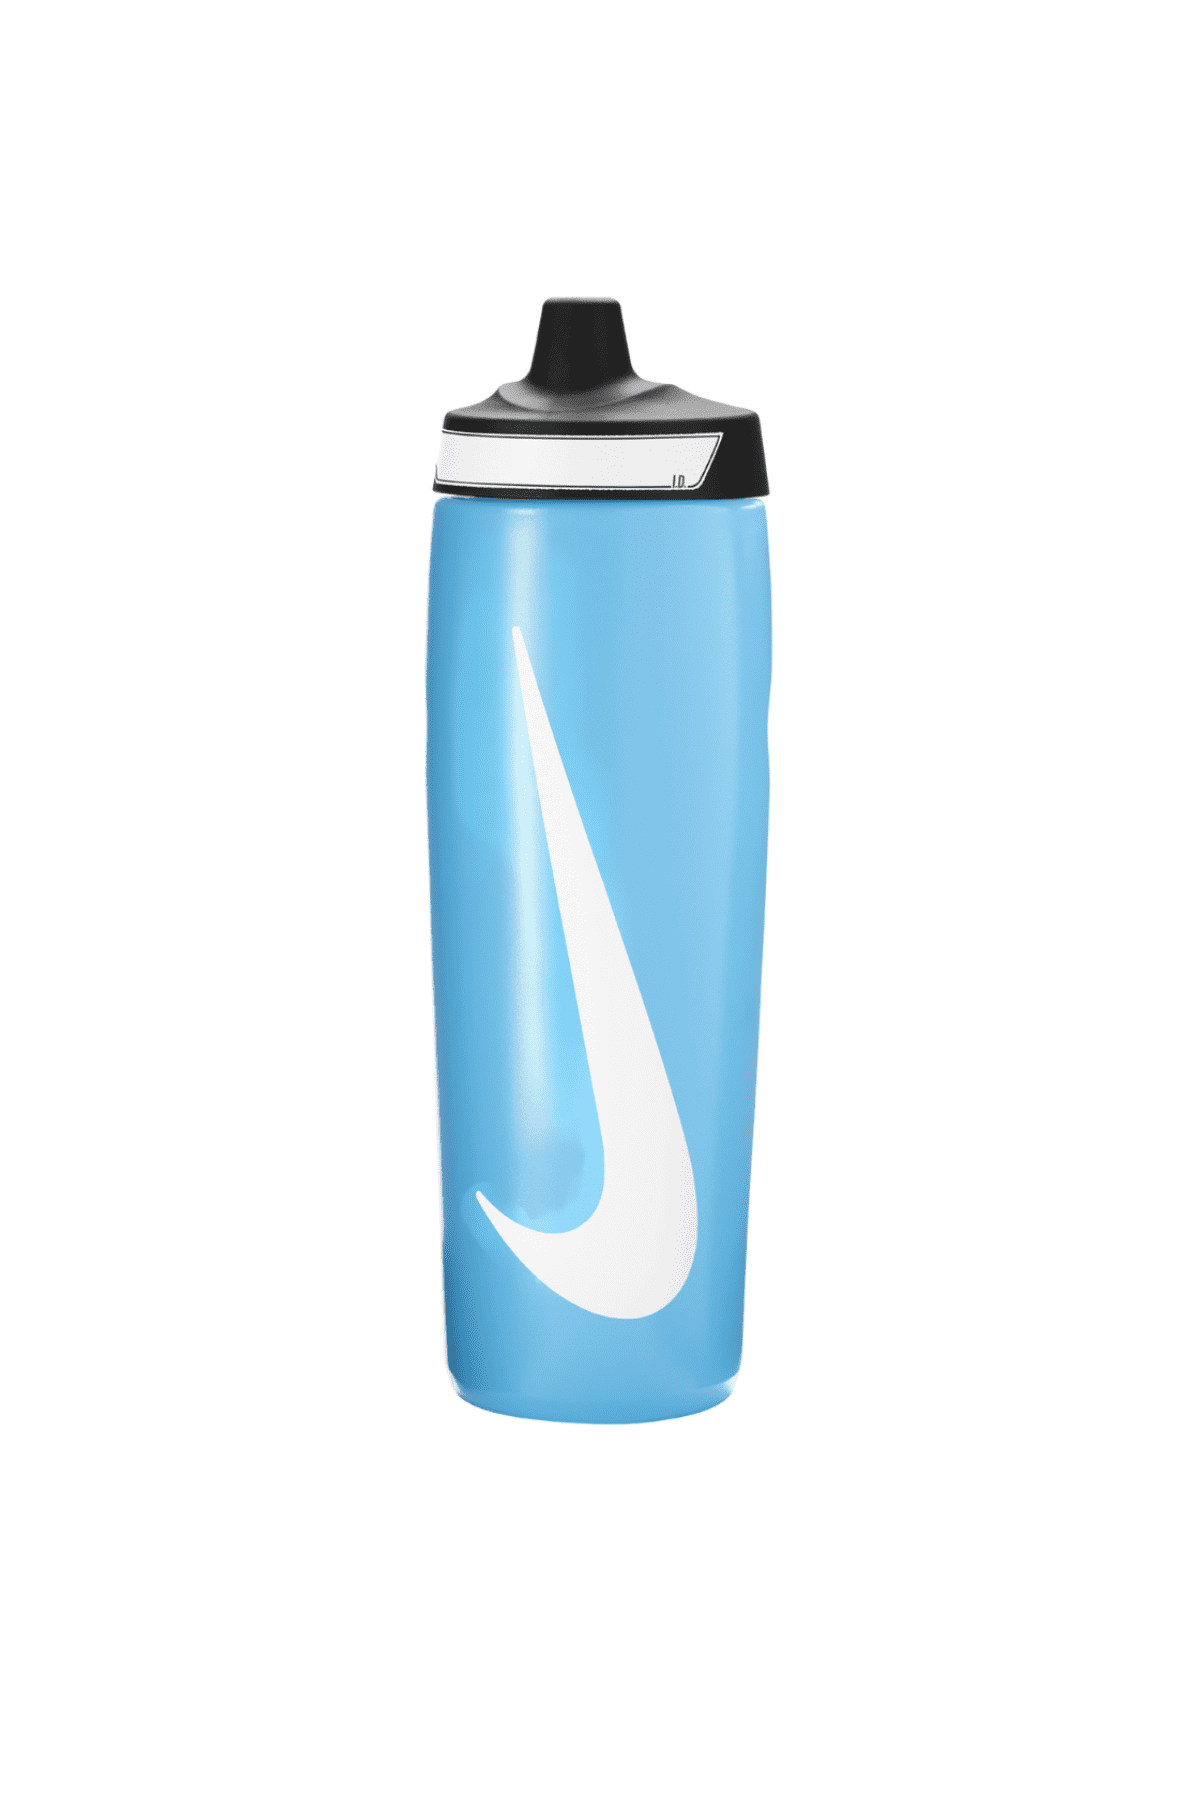 בקבוק מים - בקבוק שתייה נייק 700 מ"ל צבע כחול NIKE REFUEL-Nike-One size-נאקו